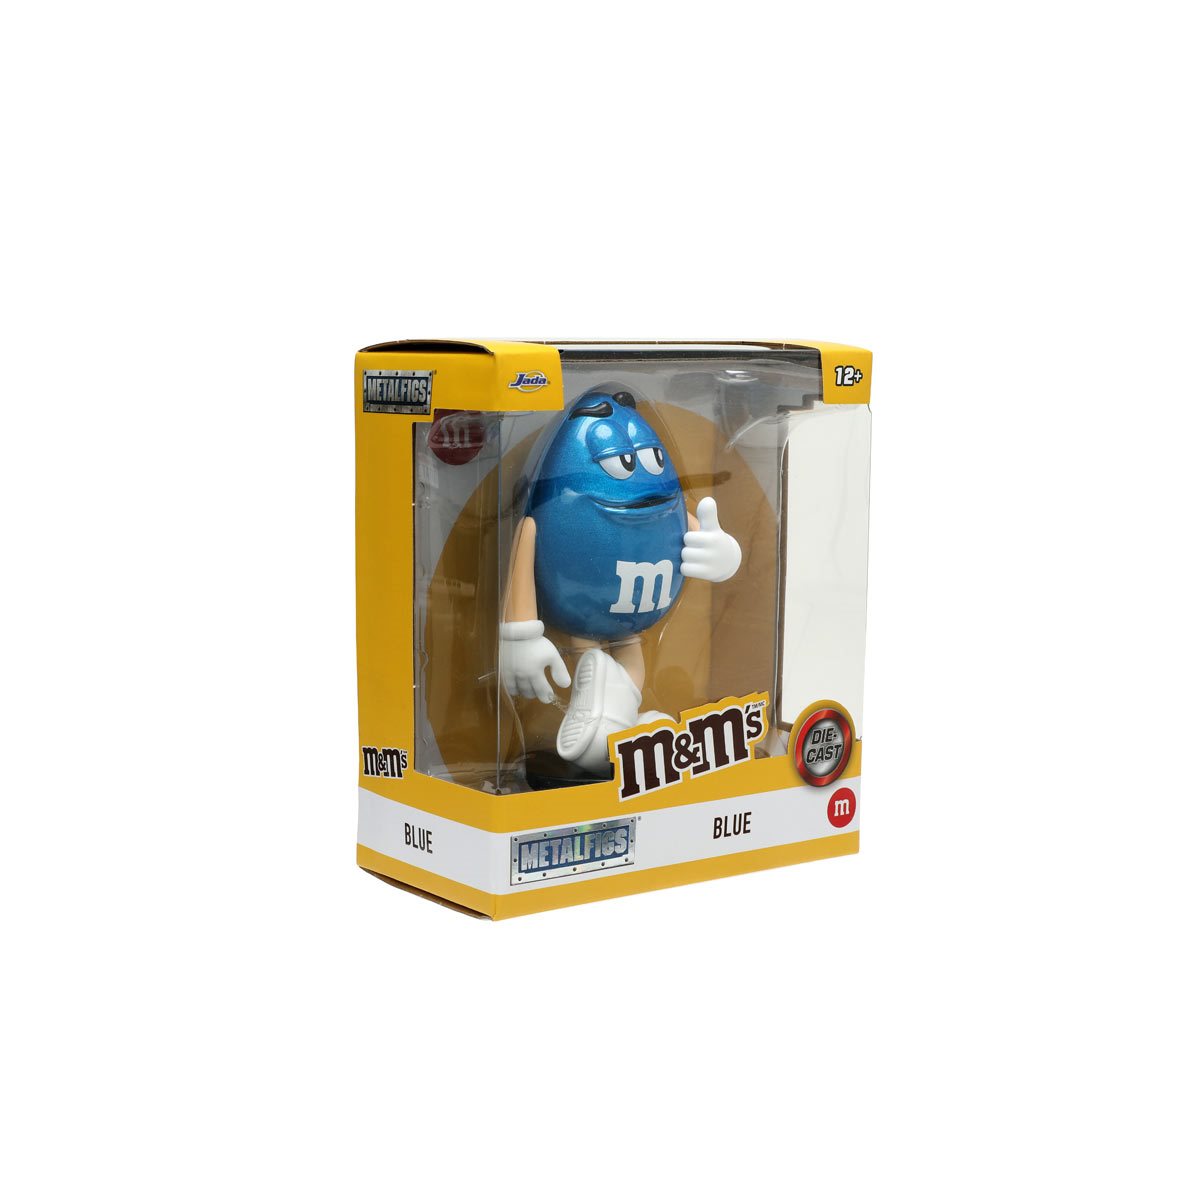 M&M'S - Blue M&M Metalfigs 4” Die-Cast Figure by Jada Toys